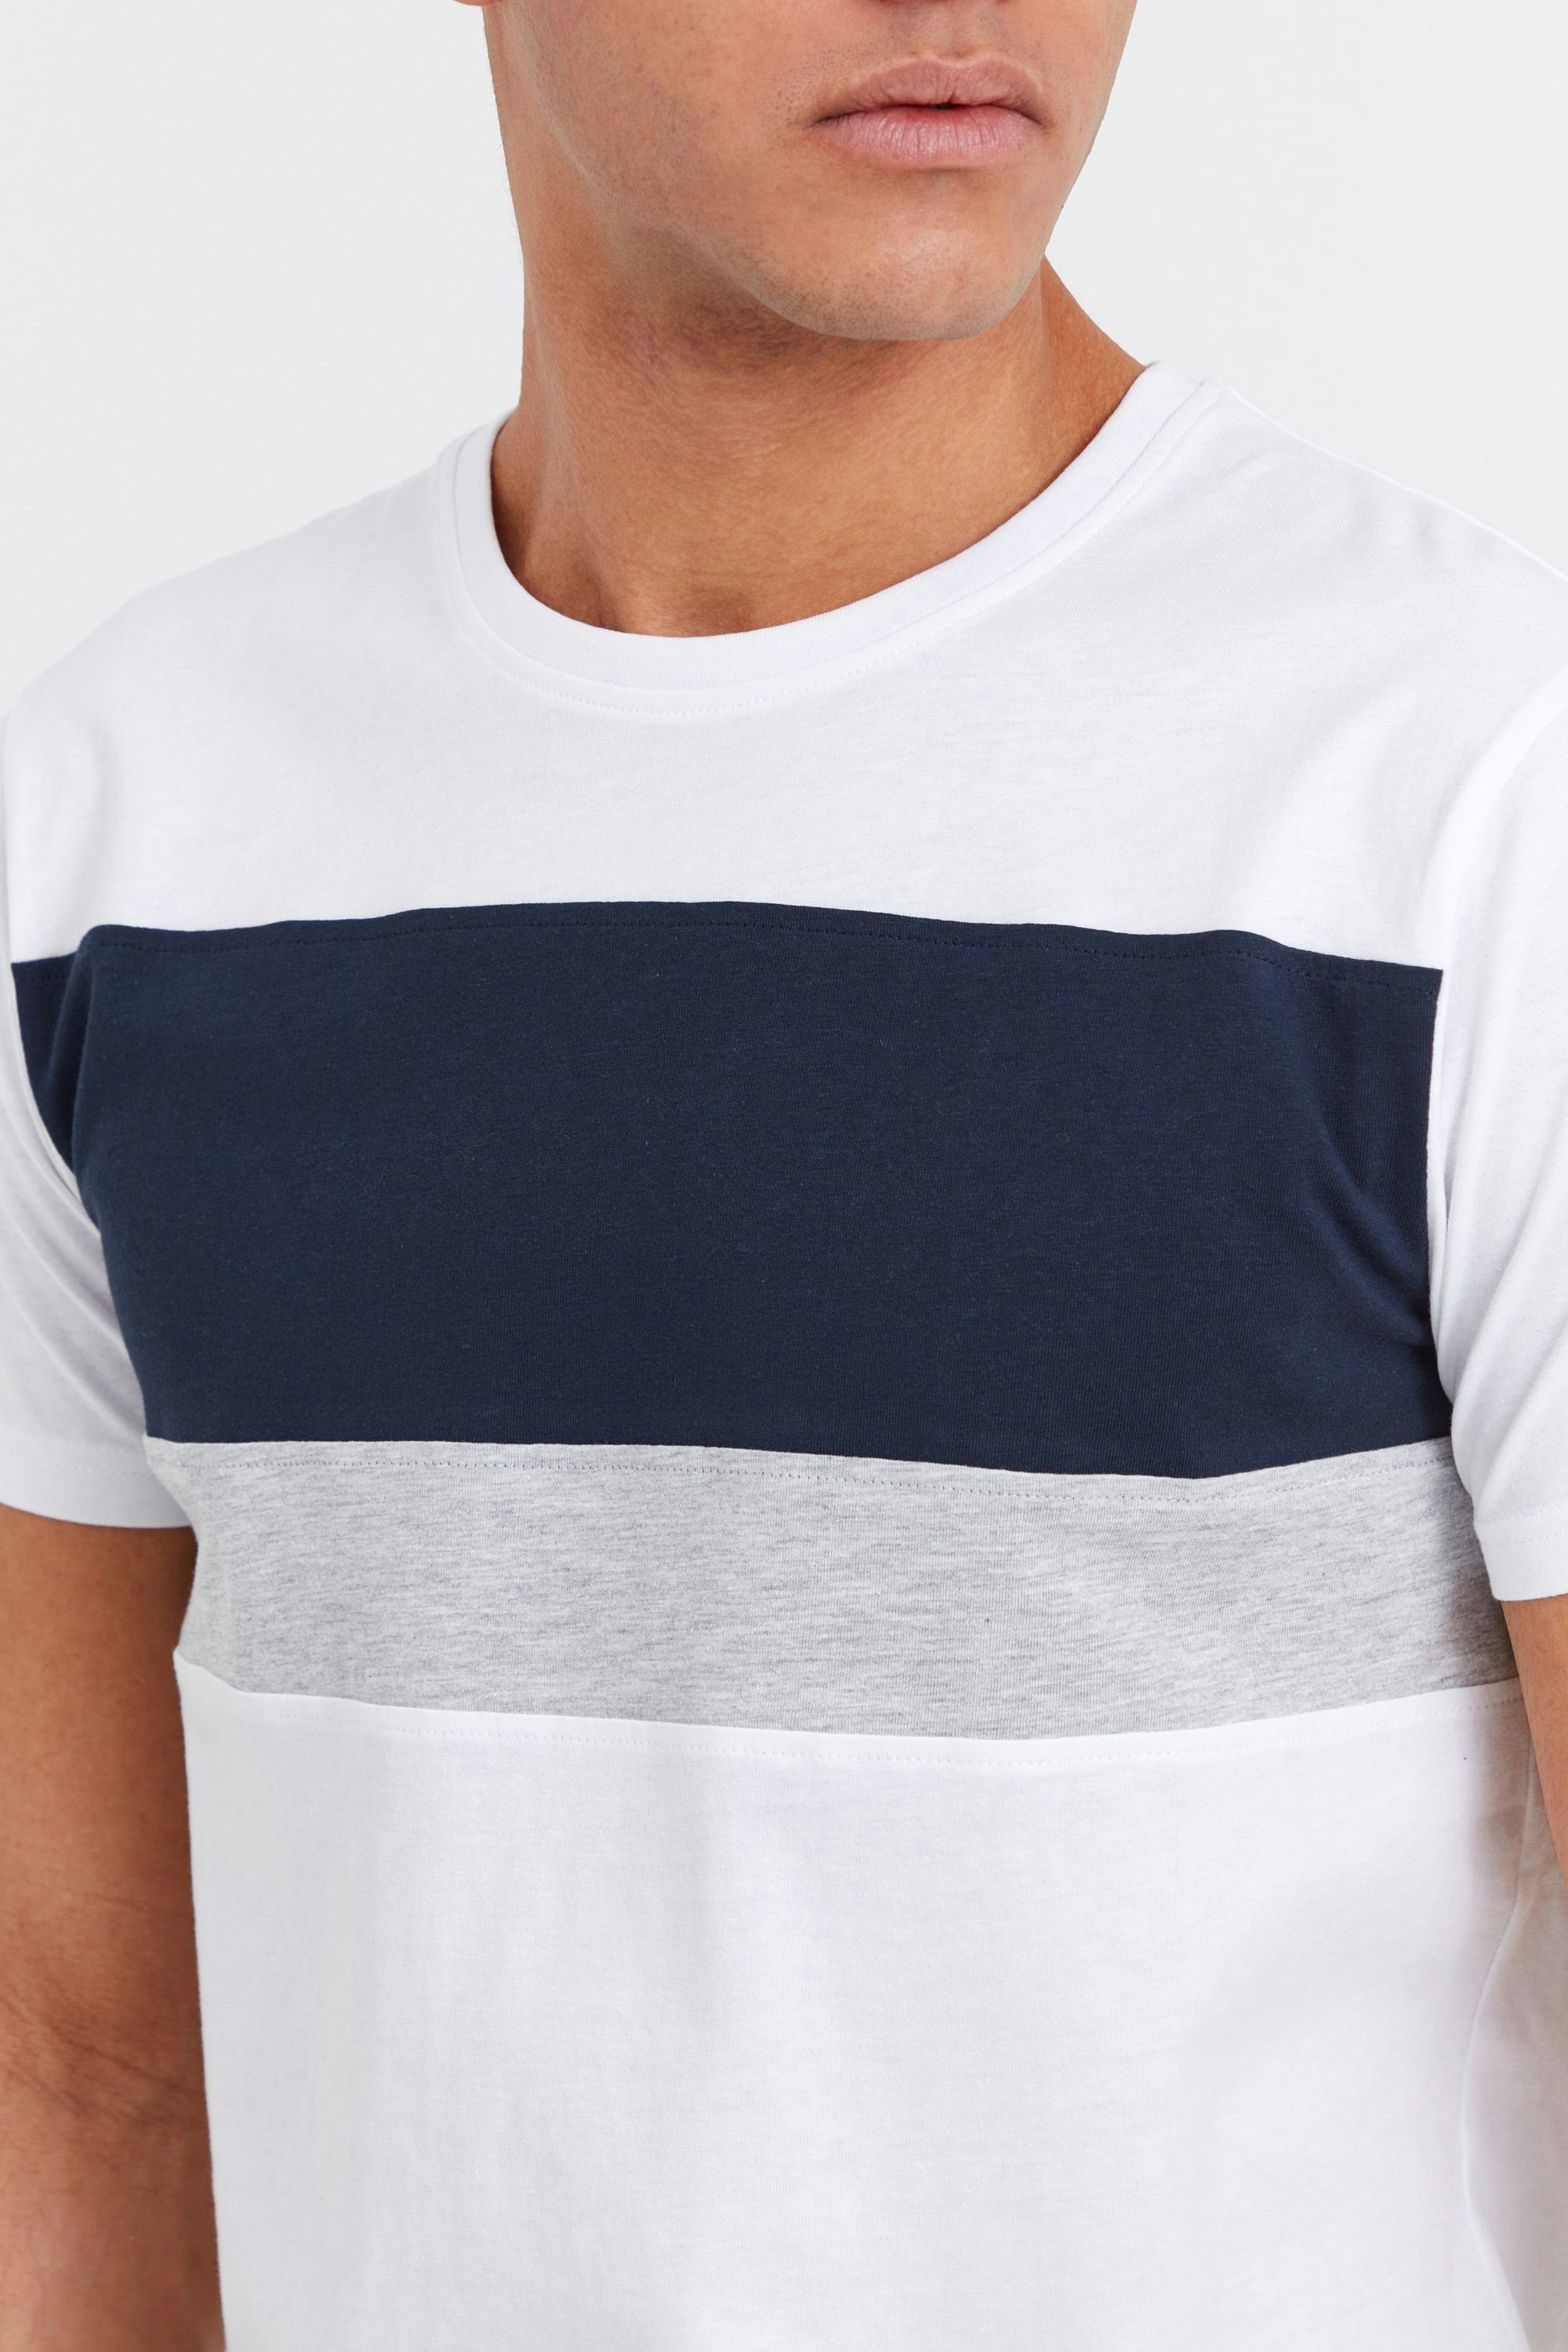 Tricolor SDSascha (110601) White in !Solid Rundhalsshirt Streifenoptik T-Shirt